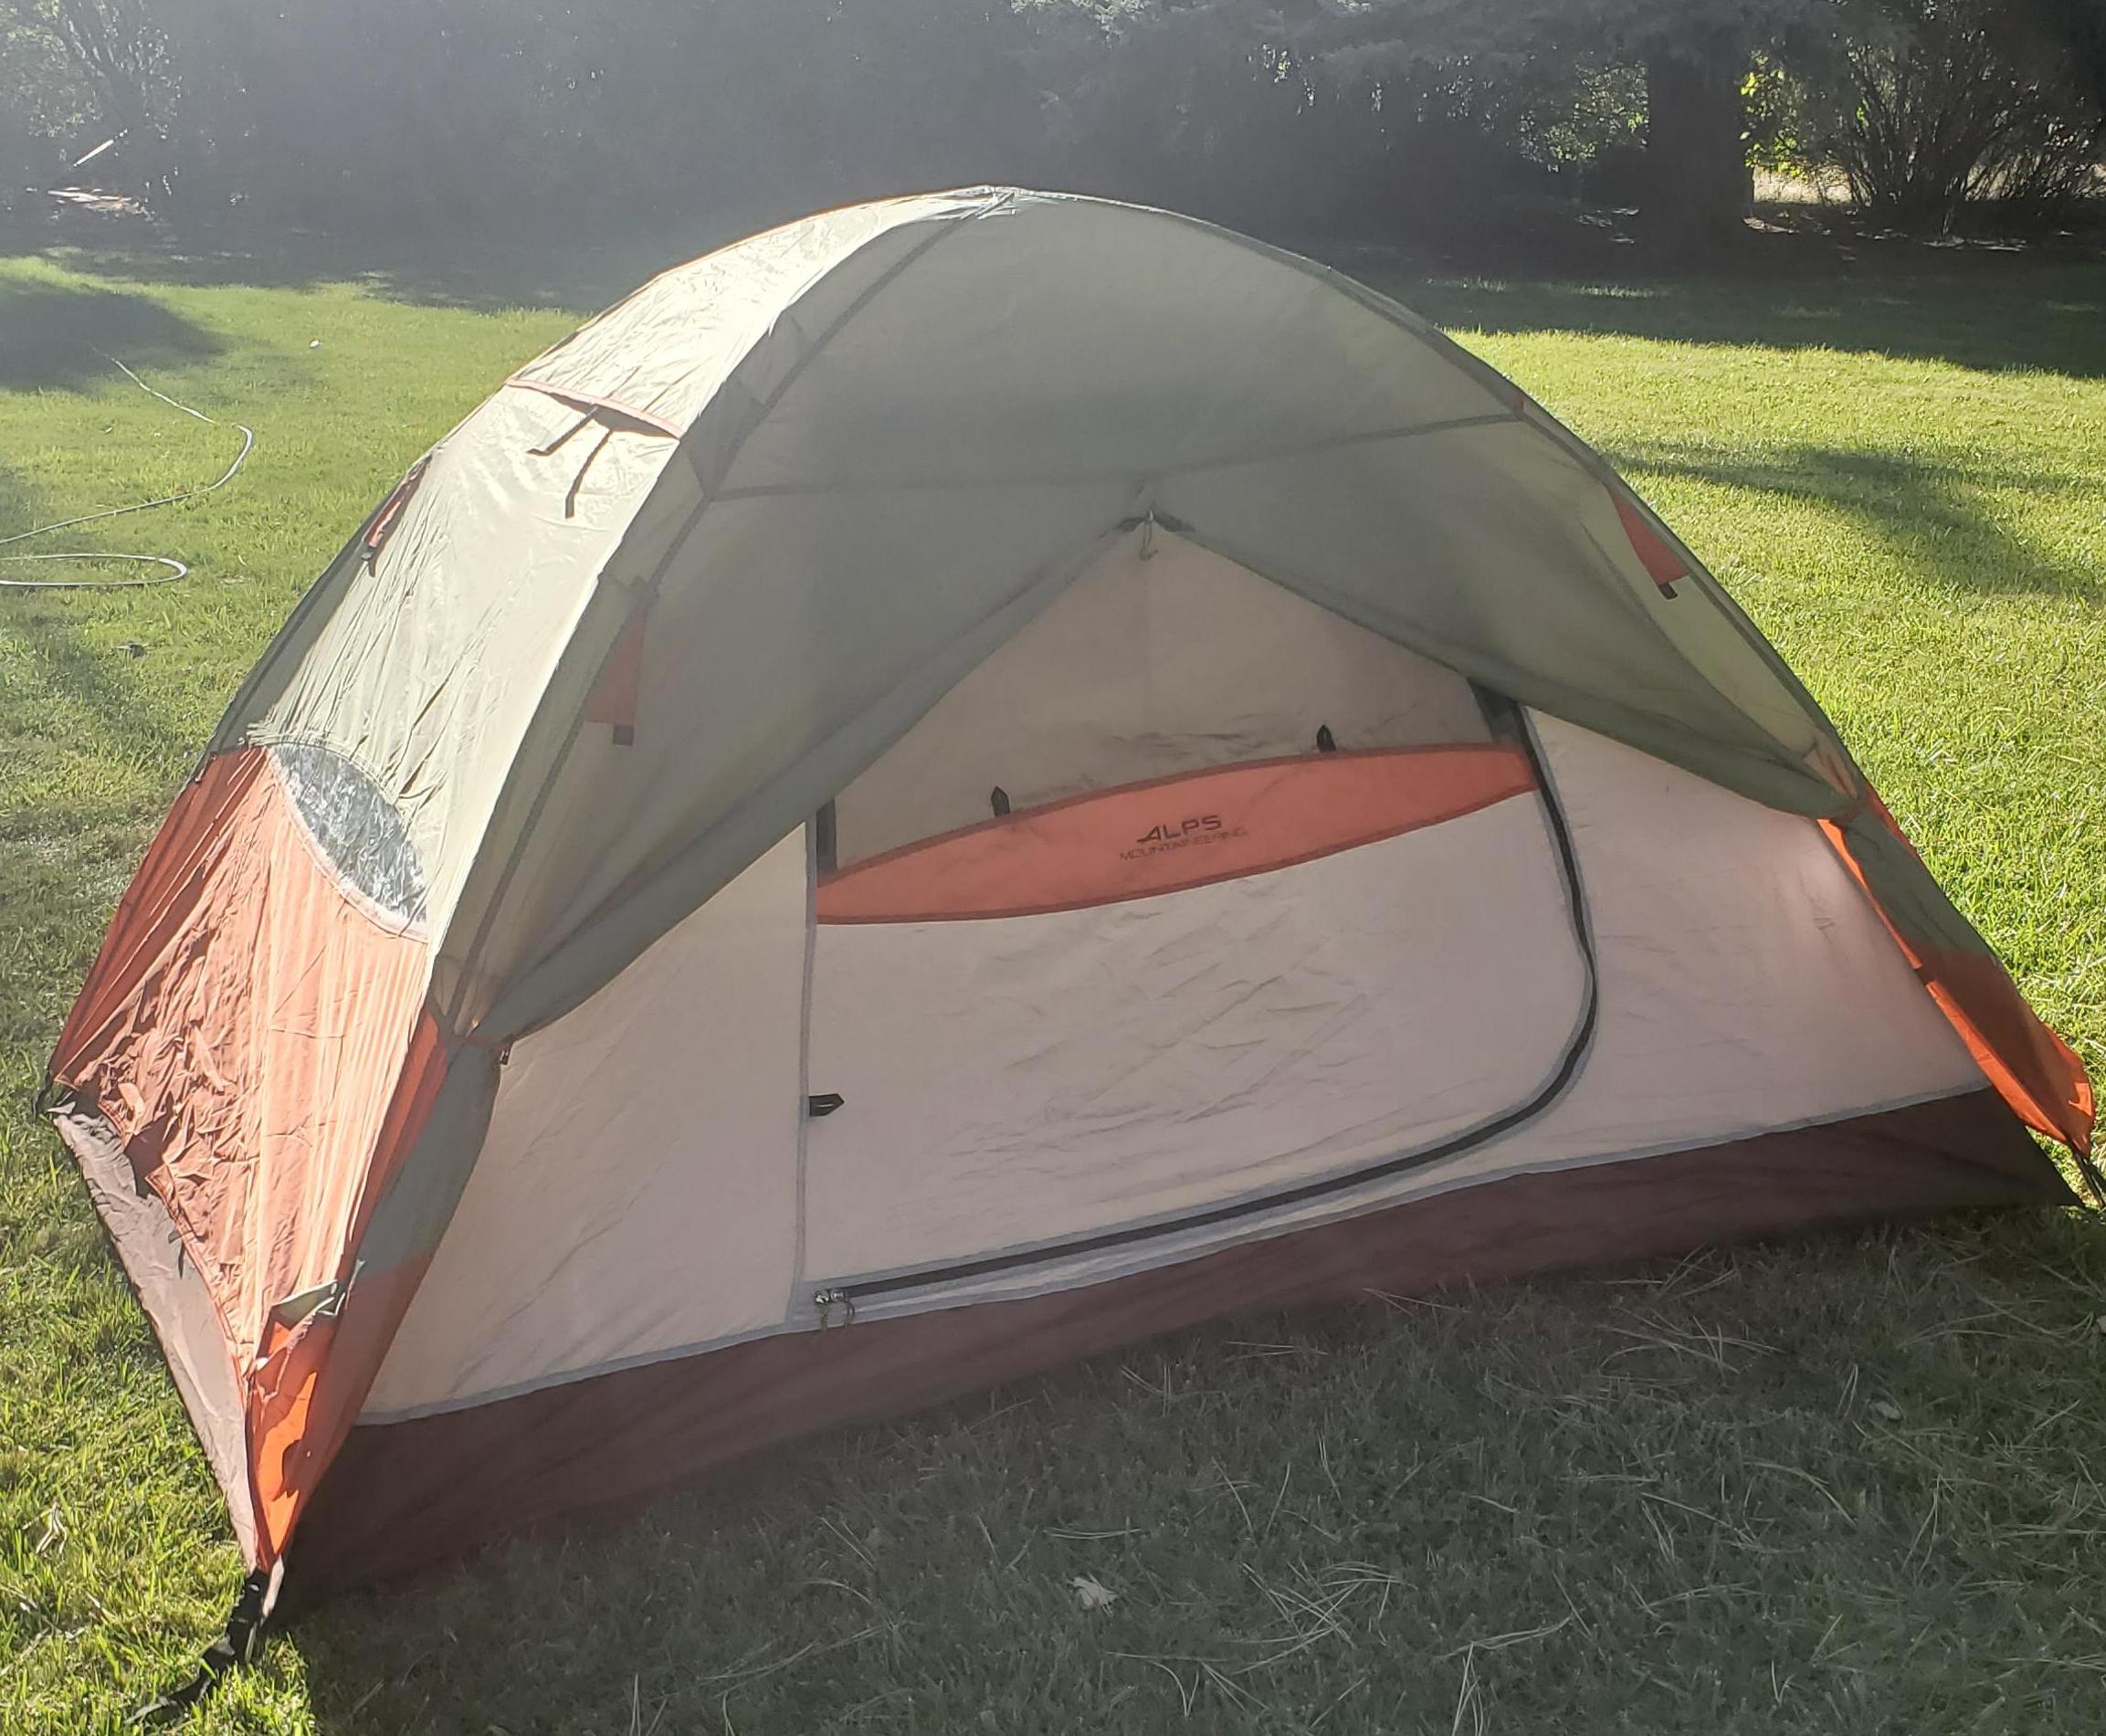 How to Setup a Taurus 2 Tent